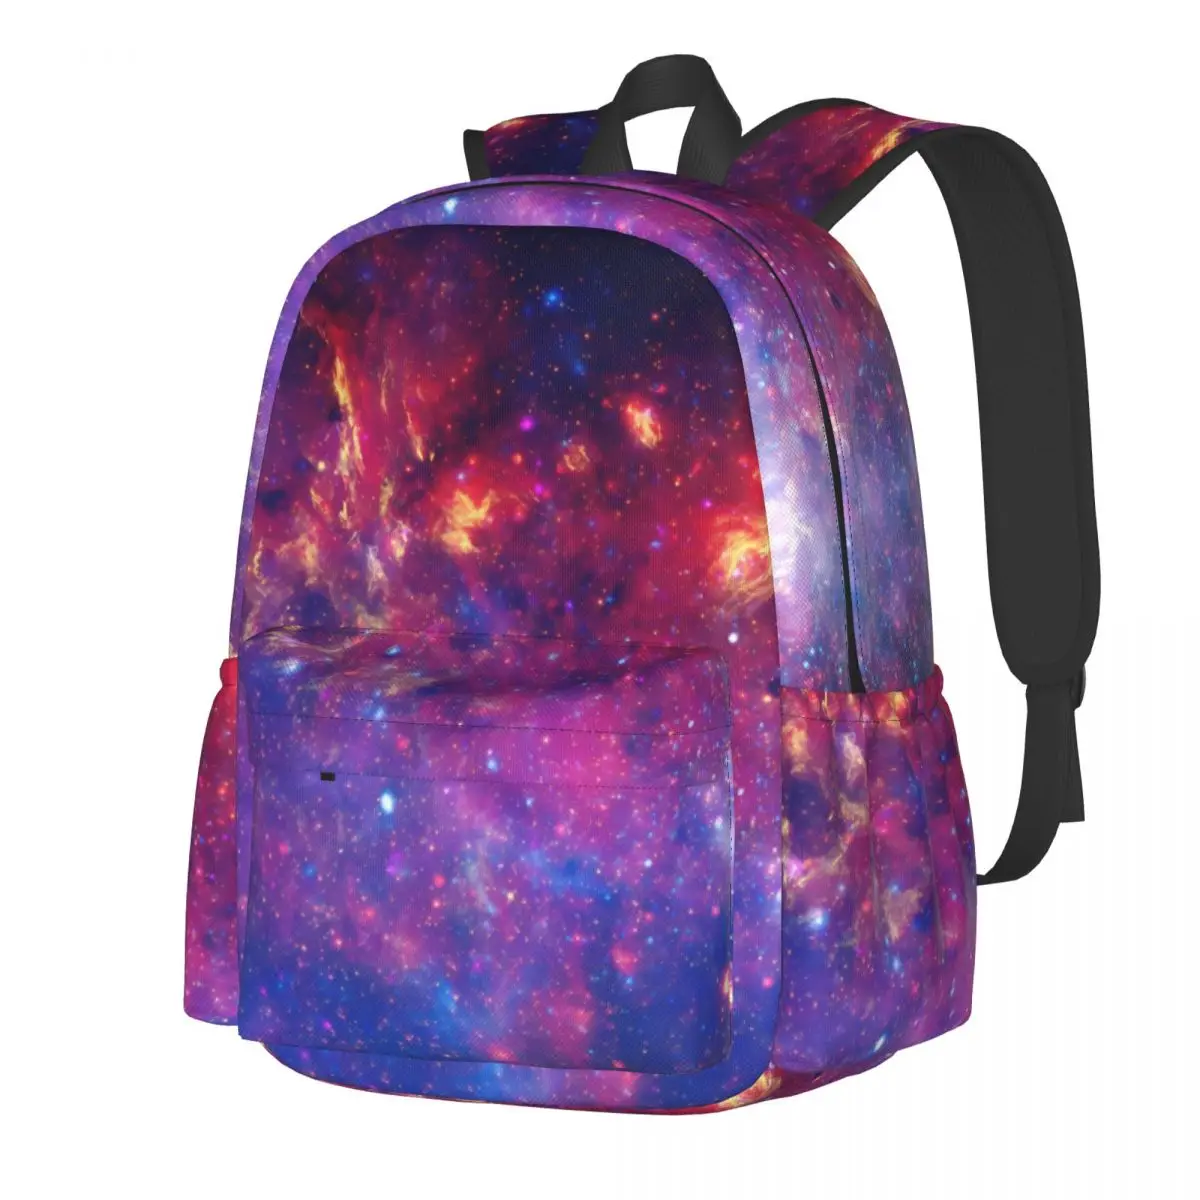 

Рюкзак унисекс с принтом Галактики, цветные Большие рюкзаки молочного цвета, уличная одежда из полиэстера, дорожные сумки для старших классов